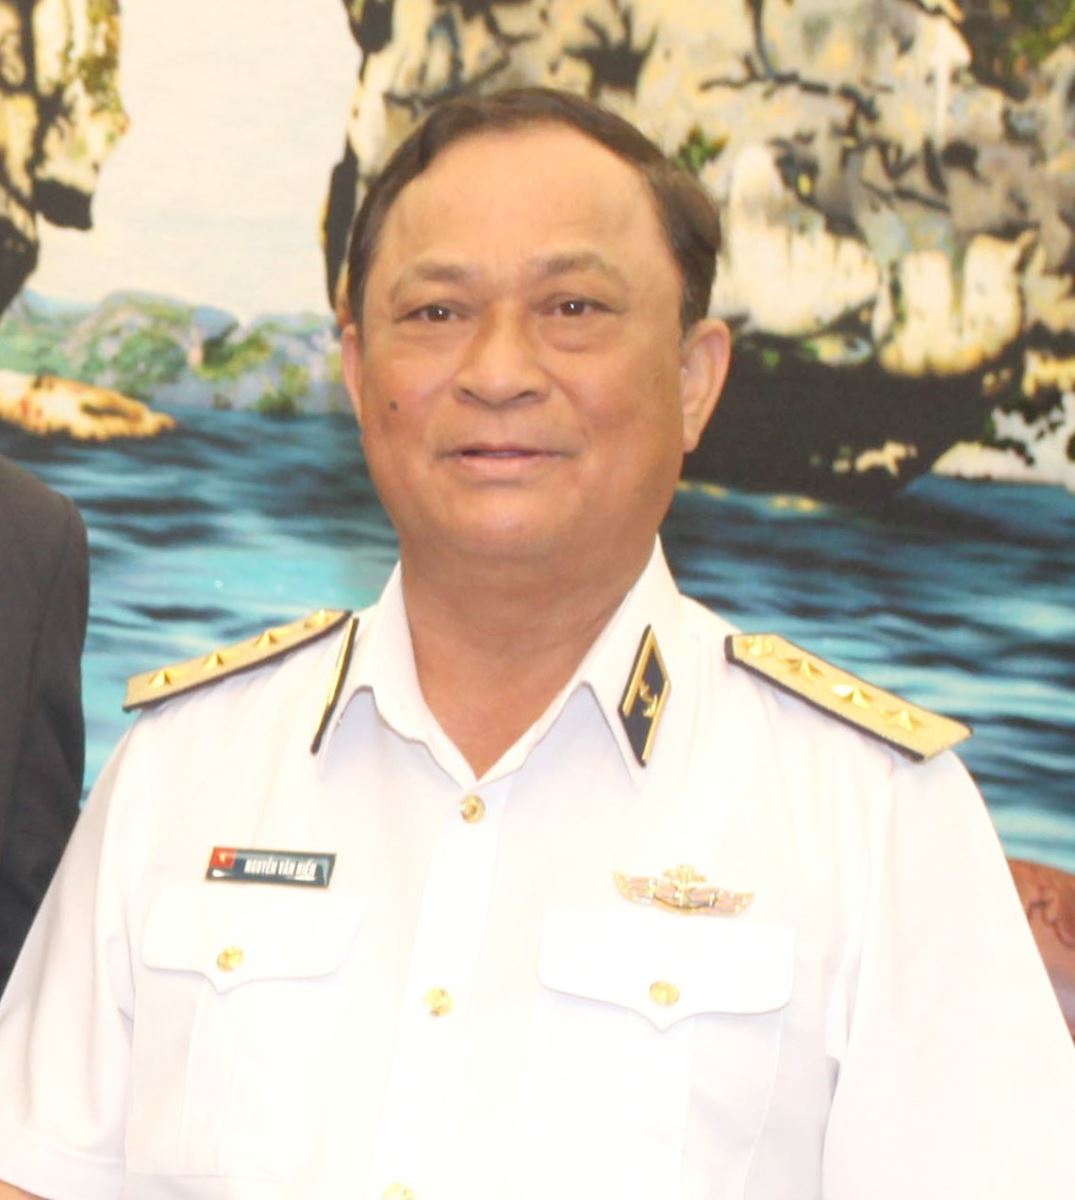 Đô đốc Nguyễn Văn Hiến, nguyên Ủy viên Trung ương Đảng, nguyên Ủy viên Đảng ủy Quân sự Trung ương, nguyên Thứ trưởng Bộ Quốc phòng, nguyên Phó Bí thư Đảng ủy, nguyên Tư lệnh Quân chủng Hải Quân